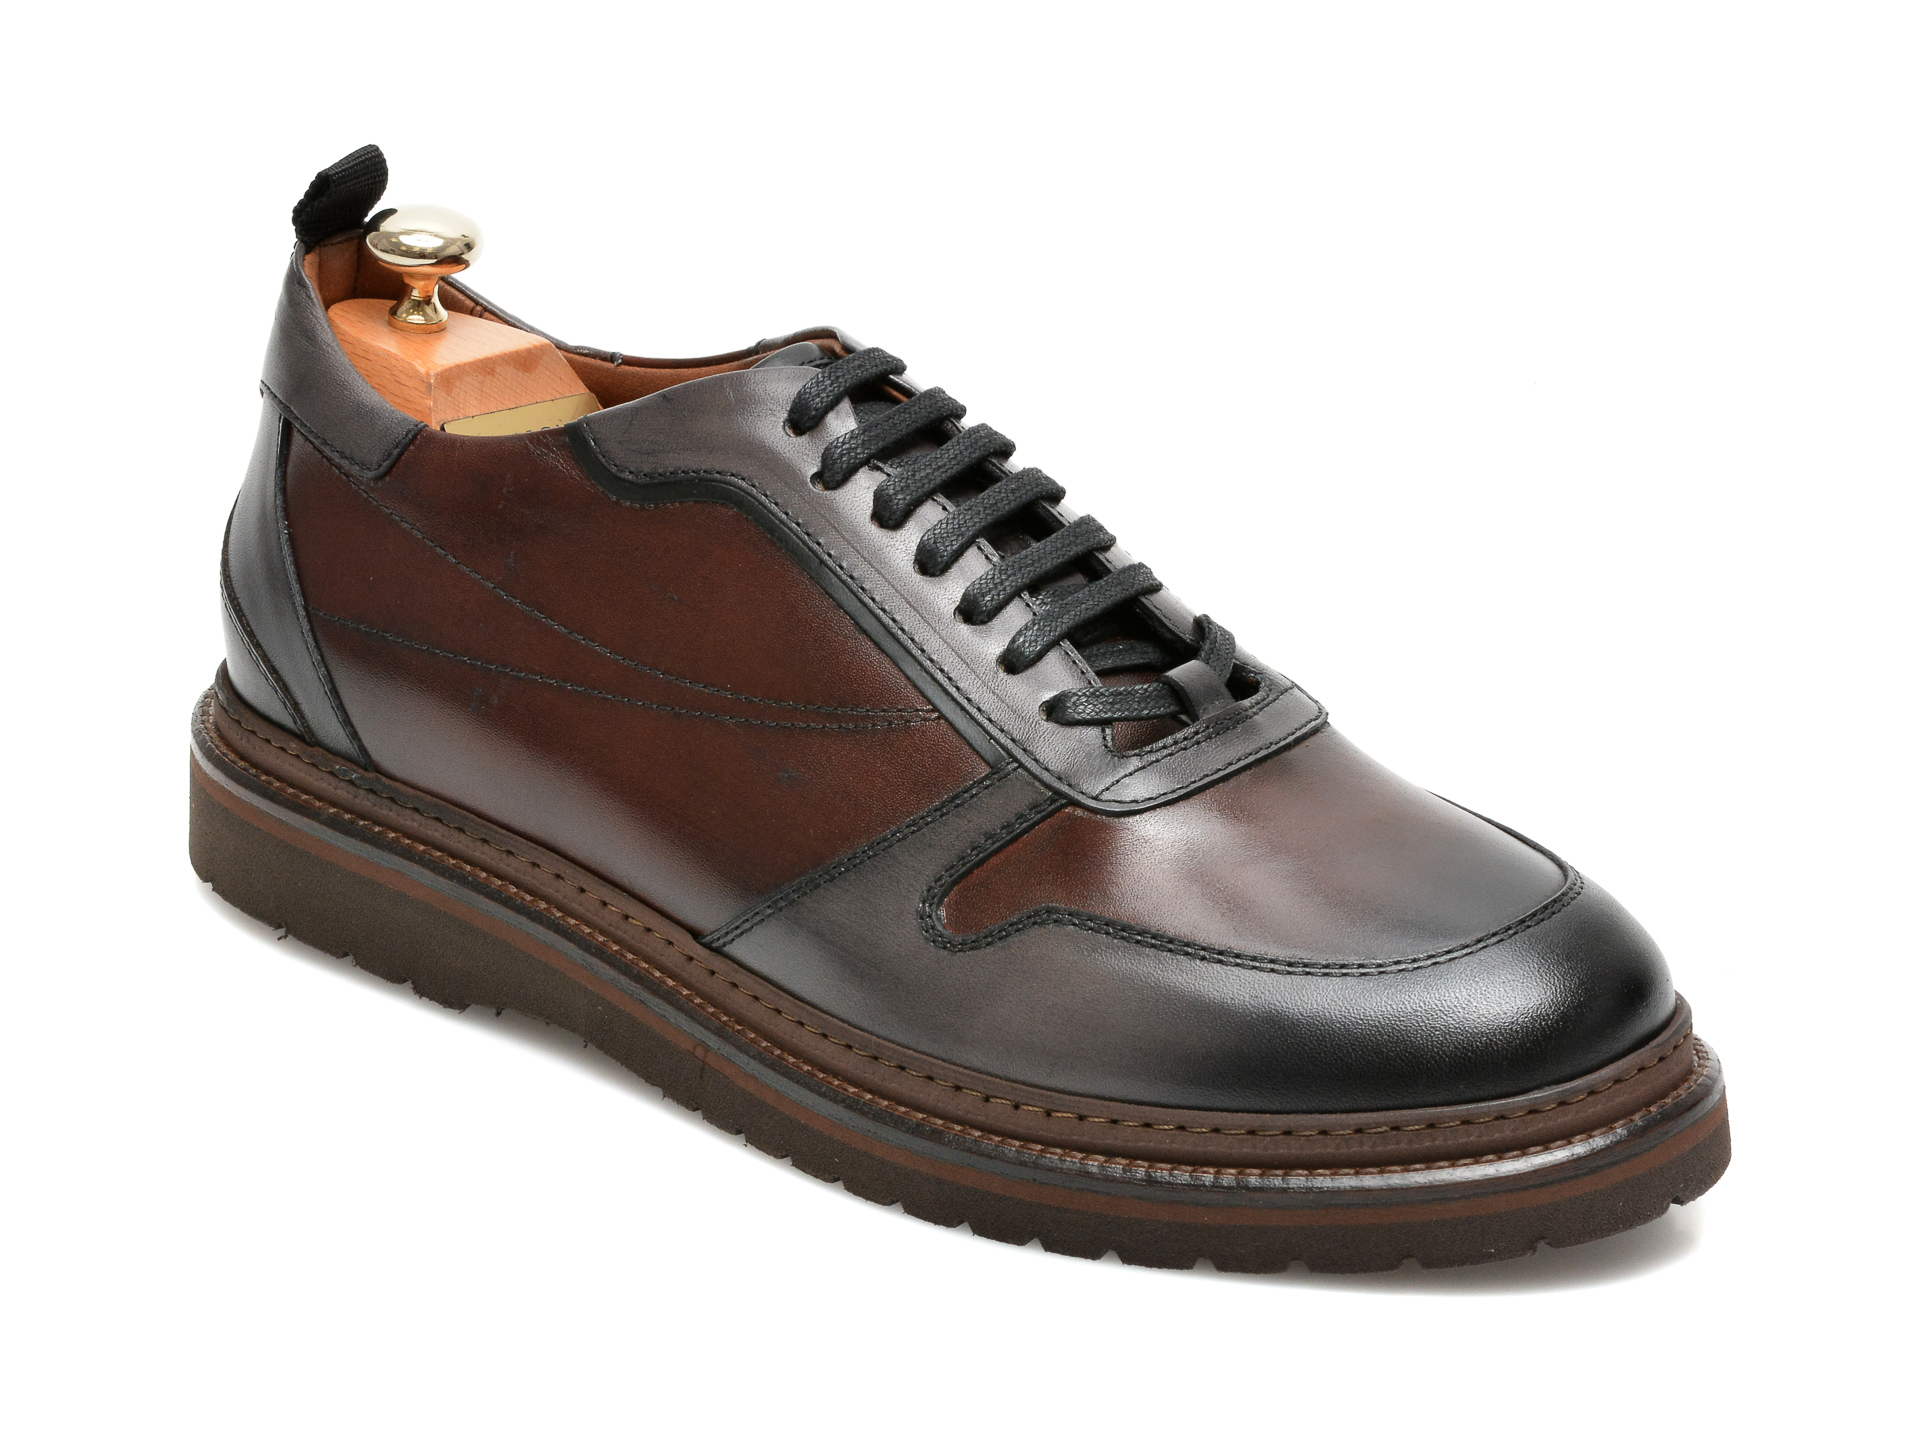 Pantofi LE COLONEL maro, 64804, din piele naturala Le Colonel imagine 2022 13clothing.ro